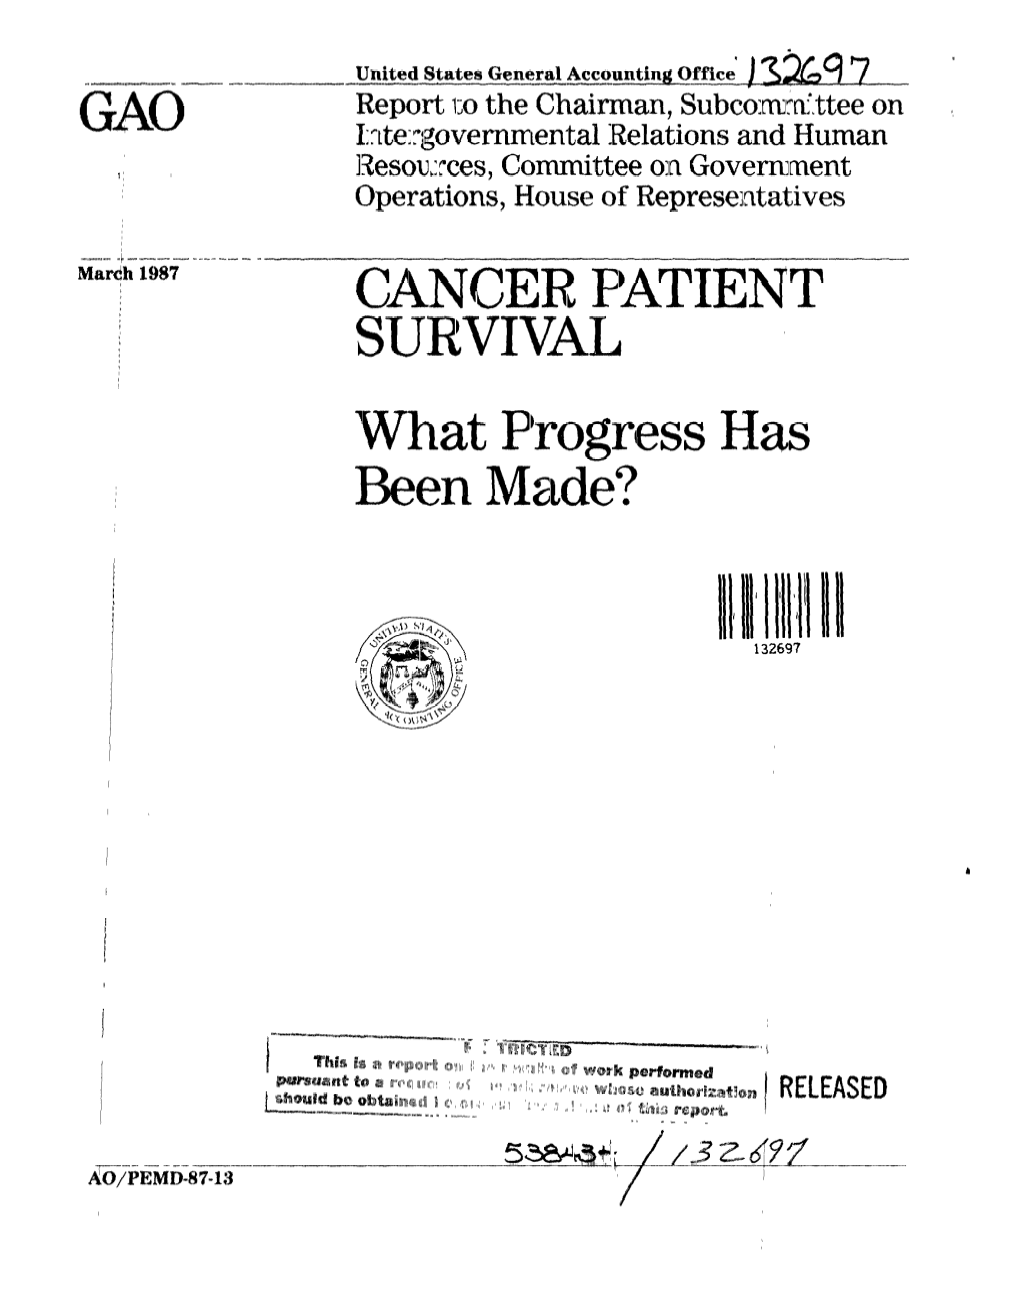 PEMD-87-13 Cancer Patient Survival